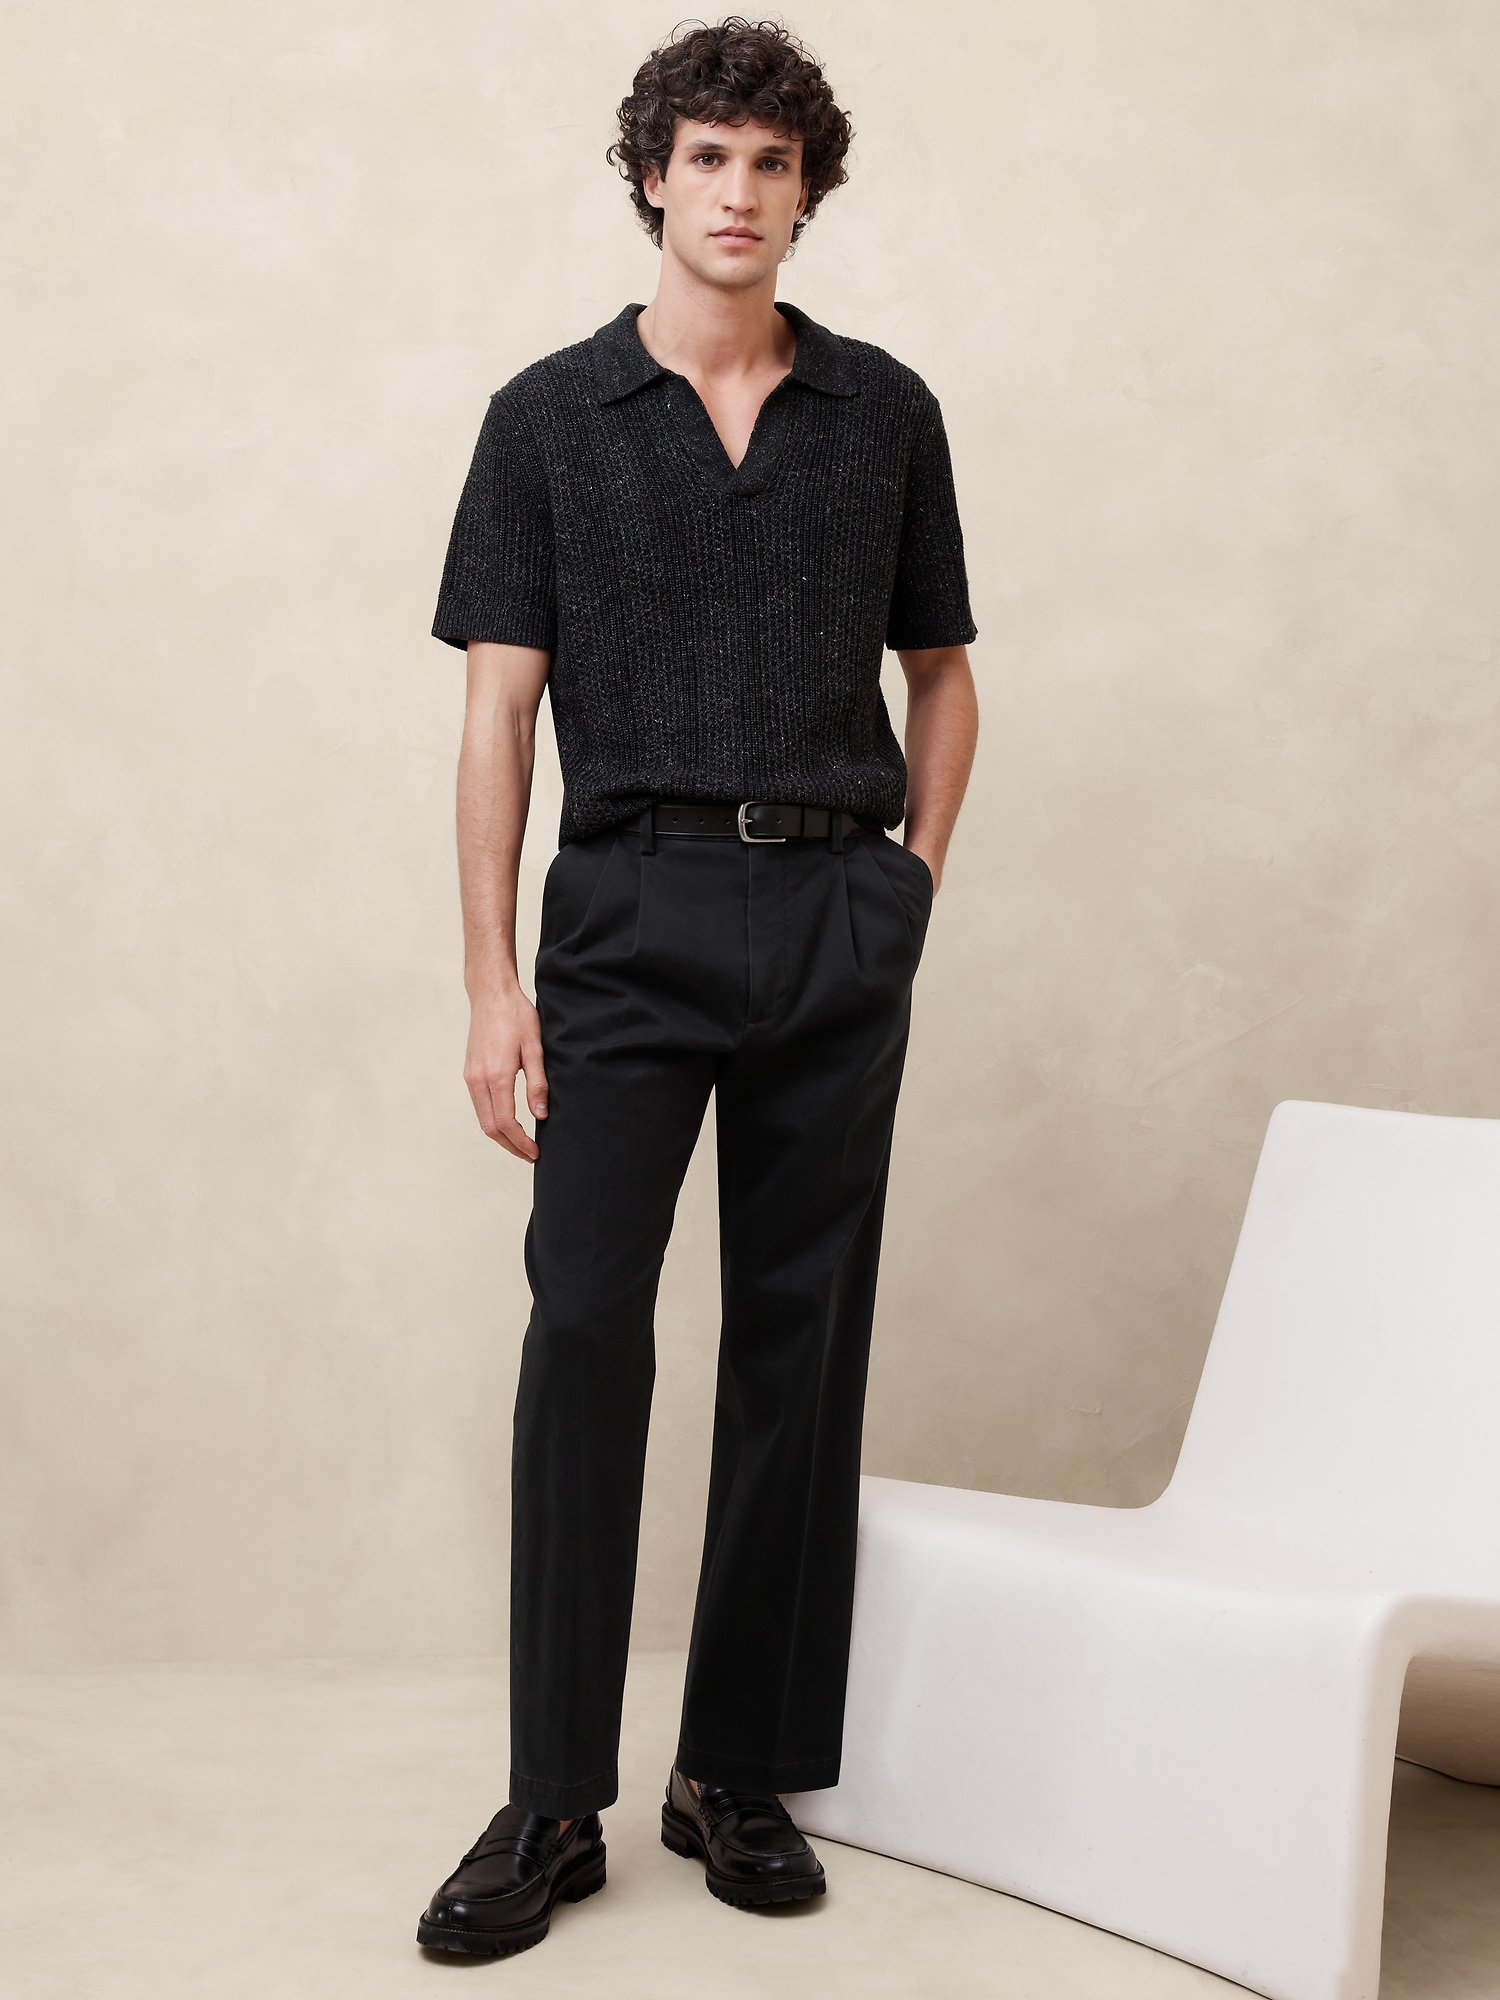 Men's Black Slim Fit Dinner Suit Pants With Belt Loops